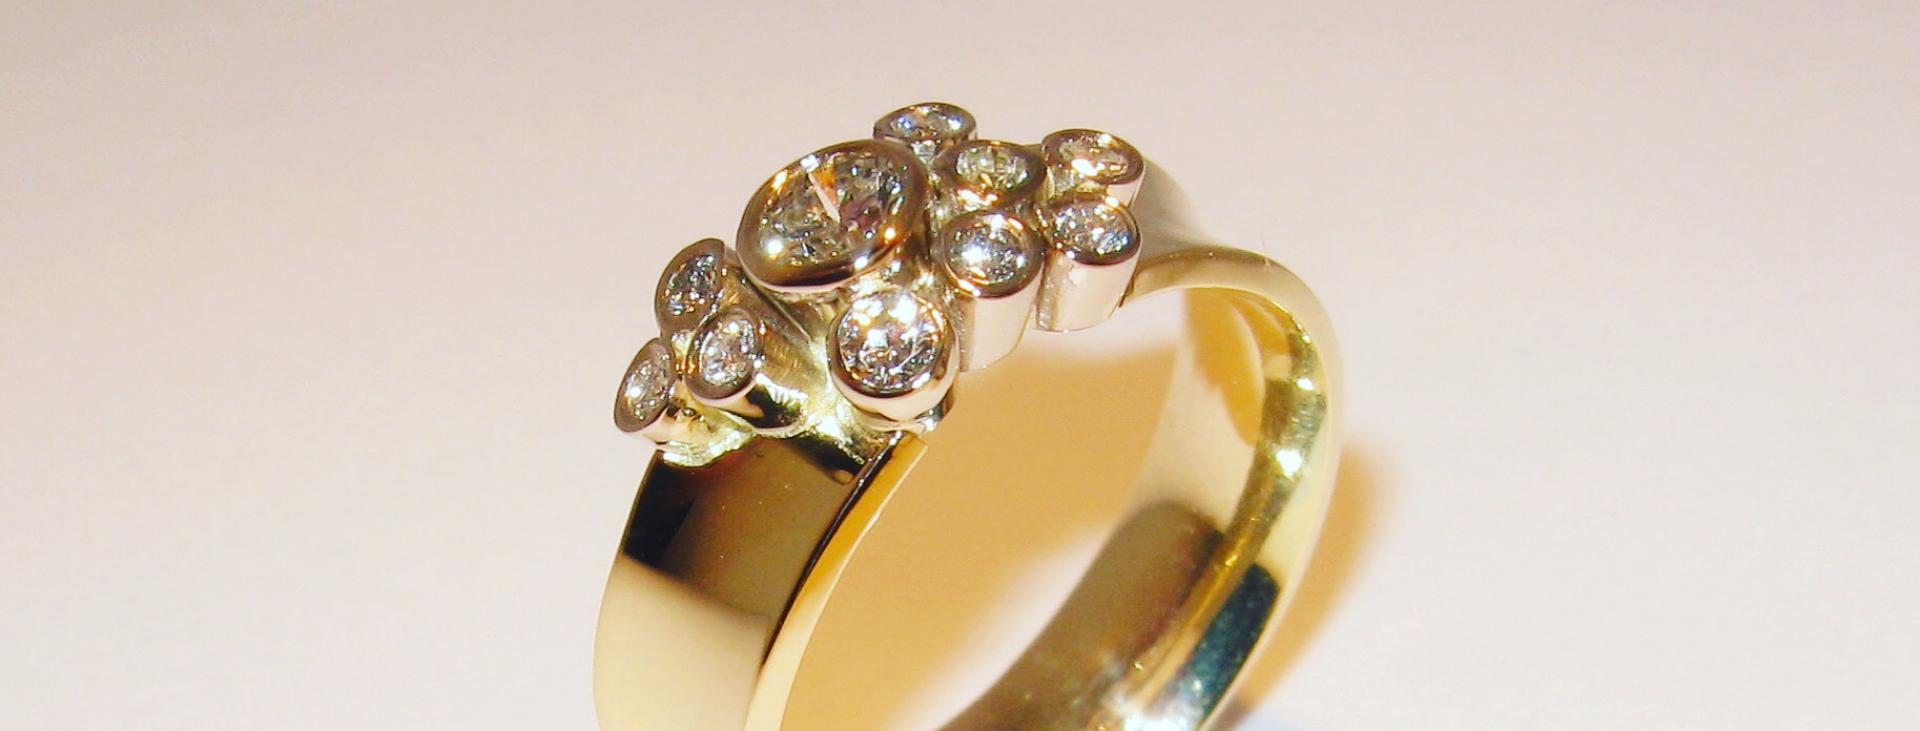  Handgemaakte Bicolor ring met  zetkastjes met briljantgeslepen diamanten